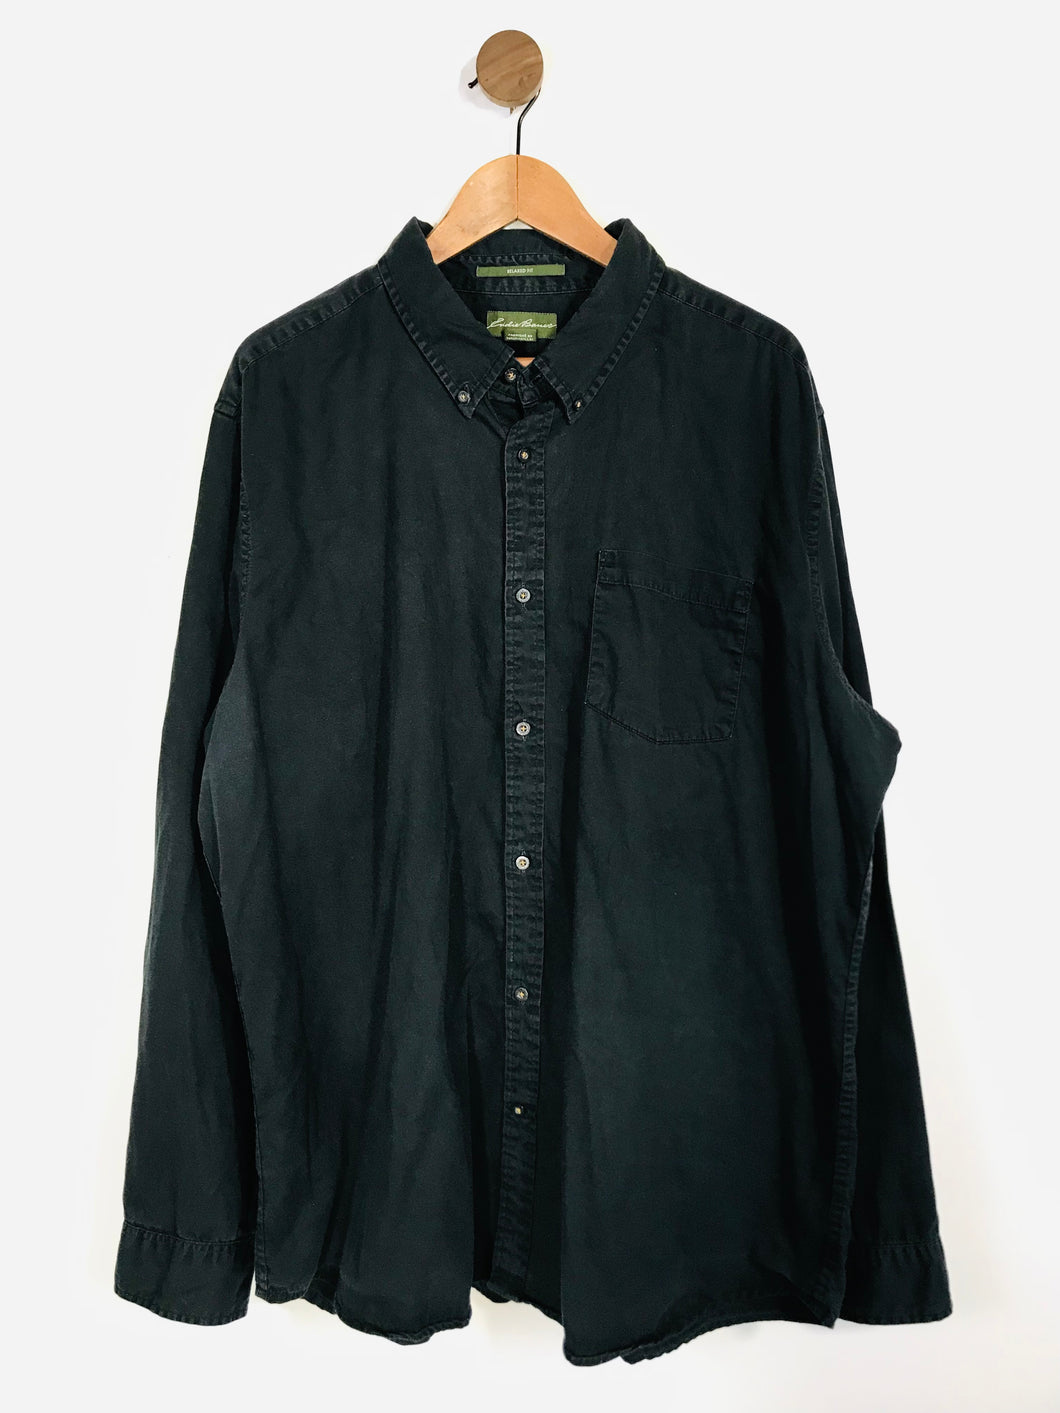 Eddie Bauer Men's Cotton Button-Up Shirt | XL | Black